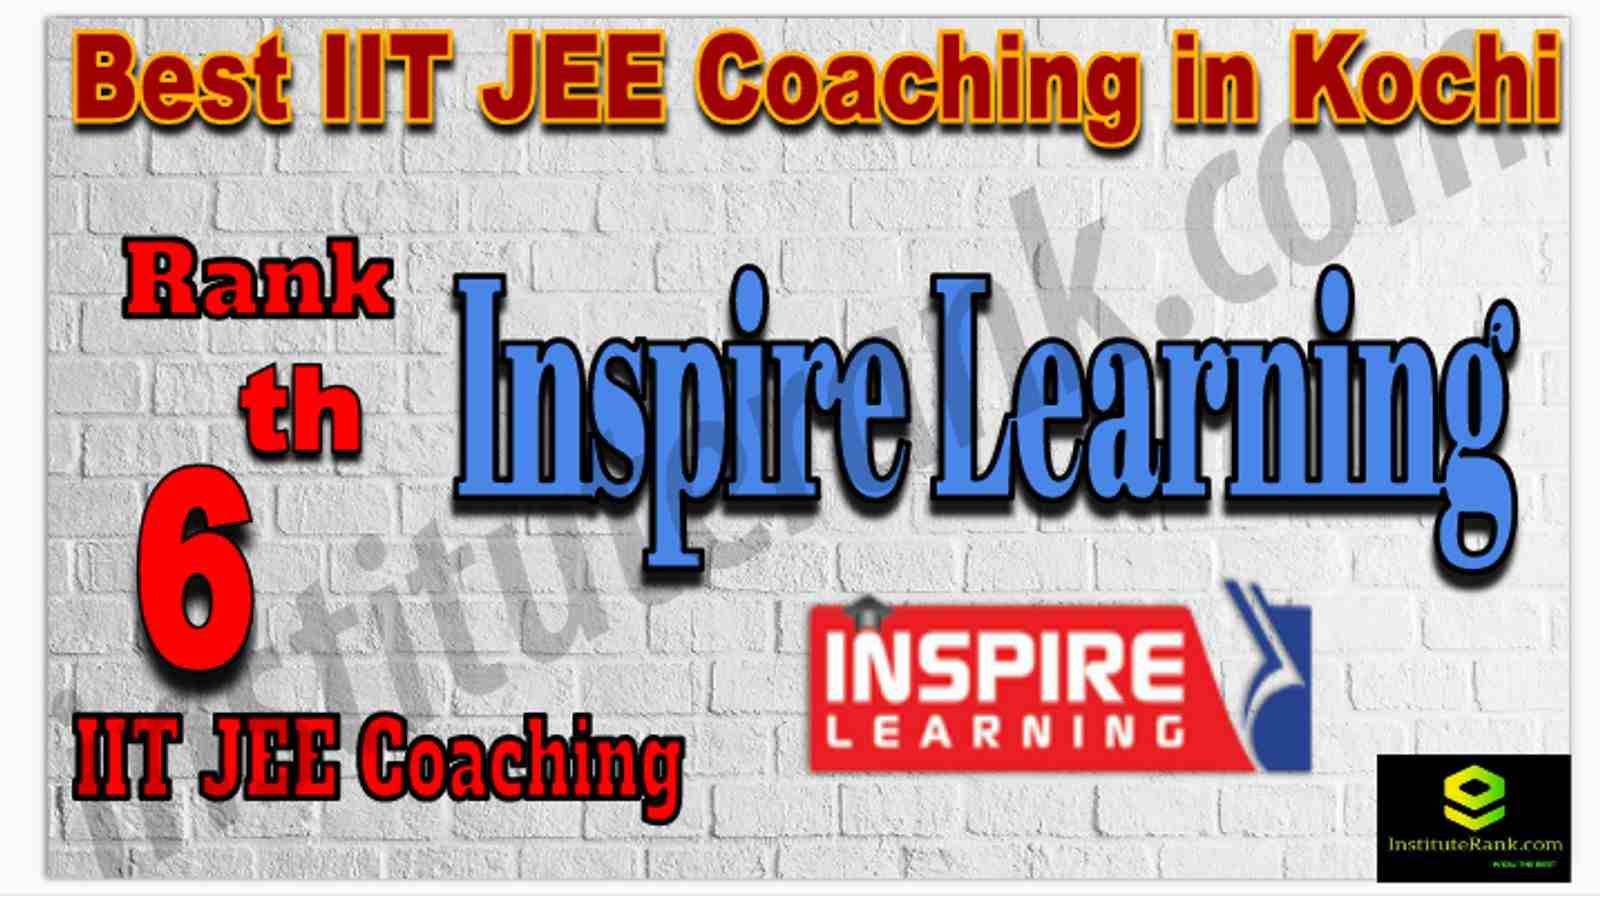 Rank 6th Best IIT JEE Coaching in Kochi